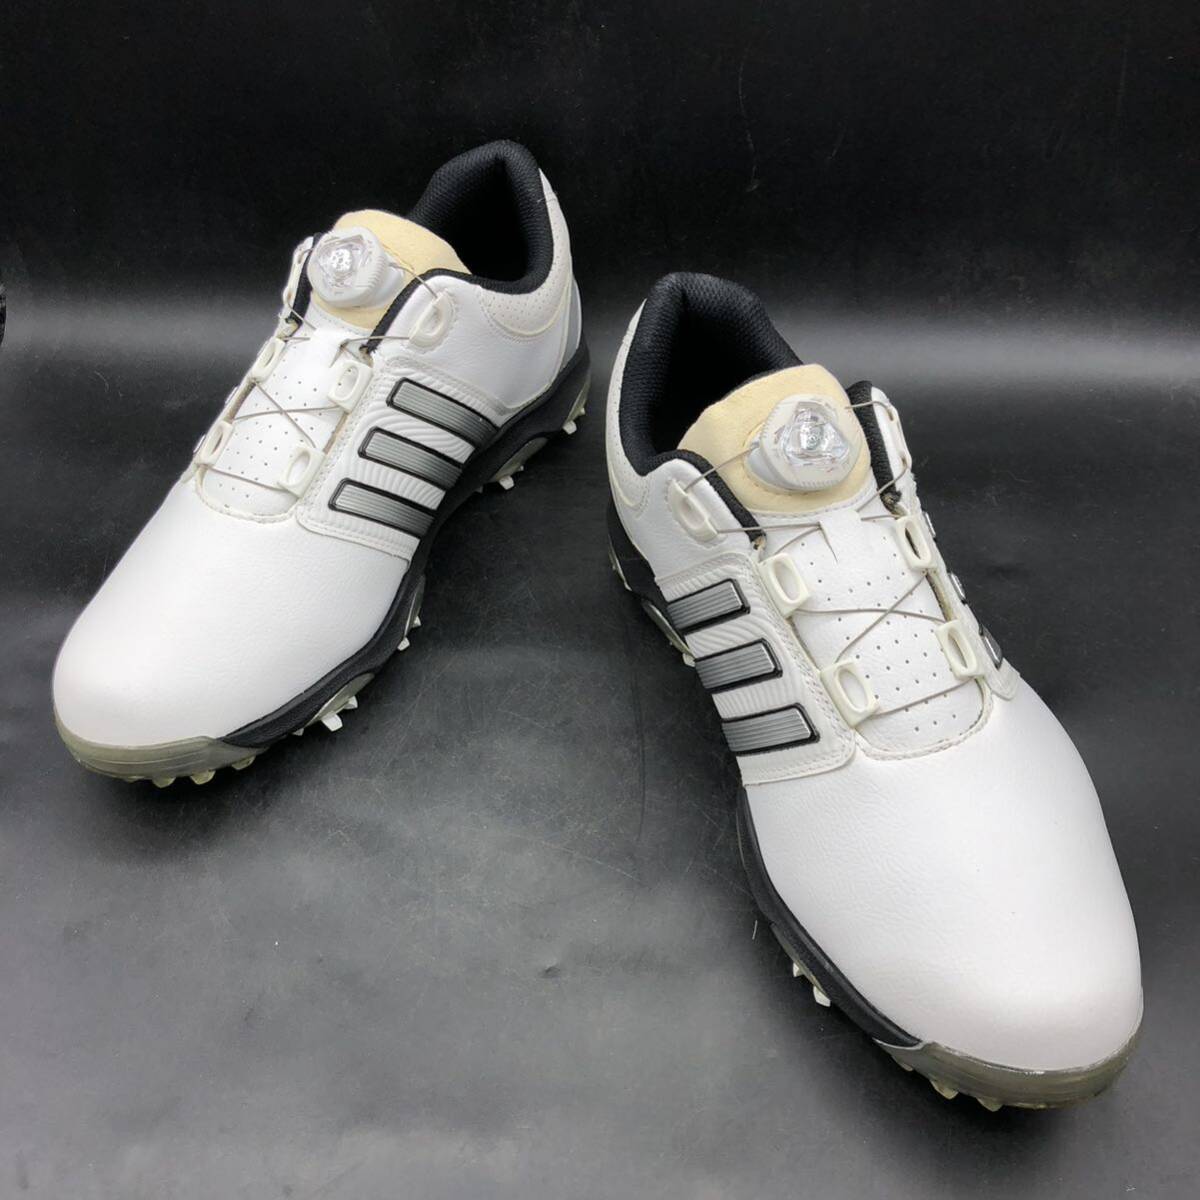 M2608 良品 adidas Golf アディダス ゴルフ tour360 X ゴルフシューズ スパイク メンズ US9.5/27.0cm ホワイト 靴_画像4